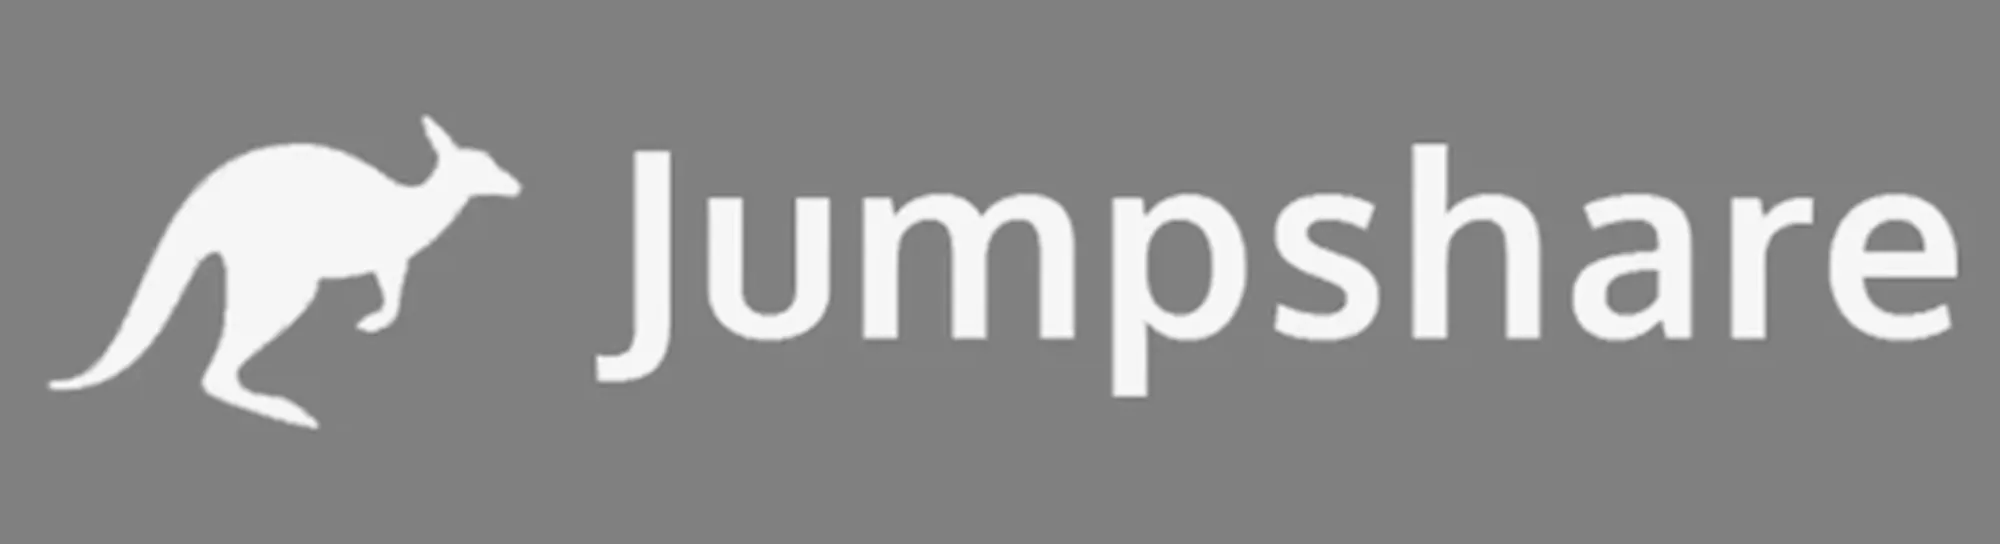 Эмблема хранилища Jumpshare